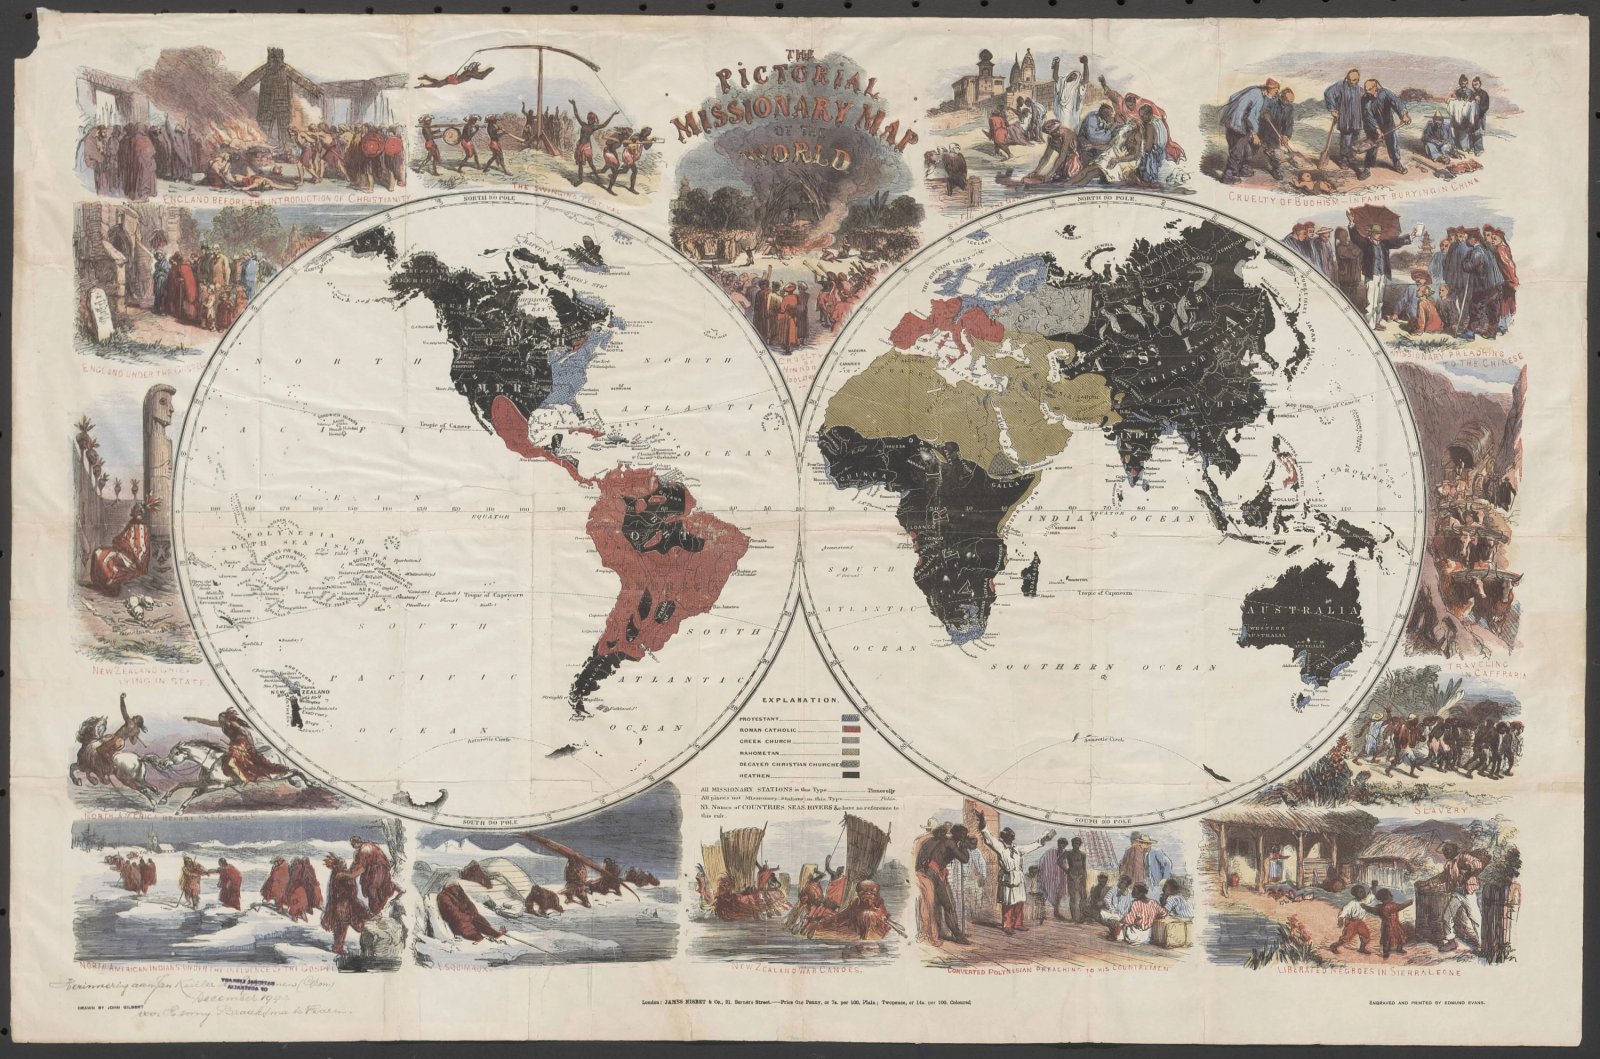 'The pictorial misionary map of the world' door John Gilbert, 1861 (niet in de digitale tentoonstelling)